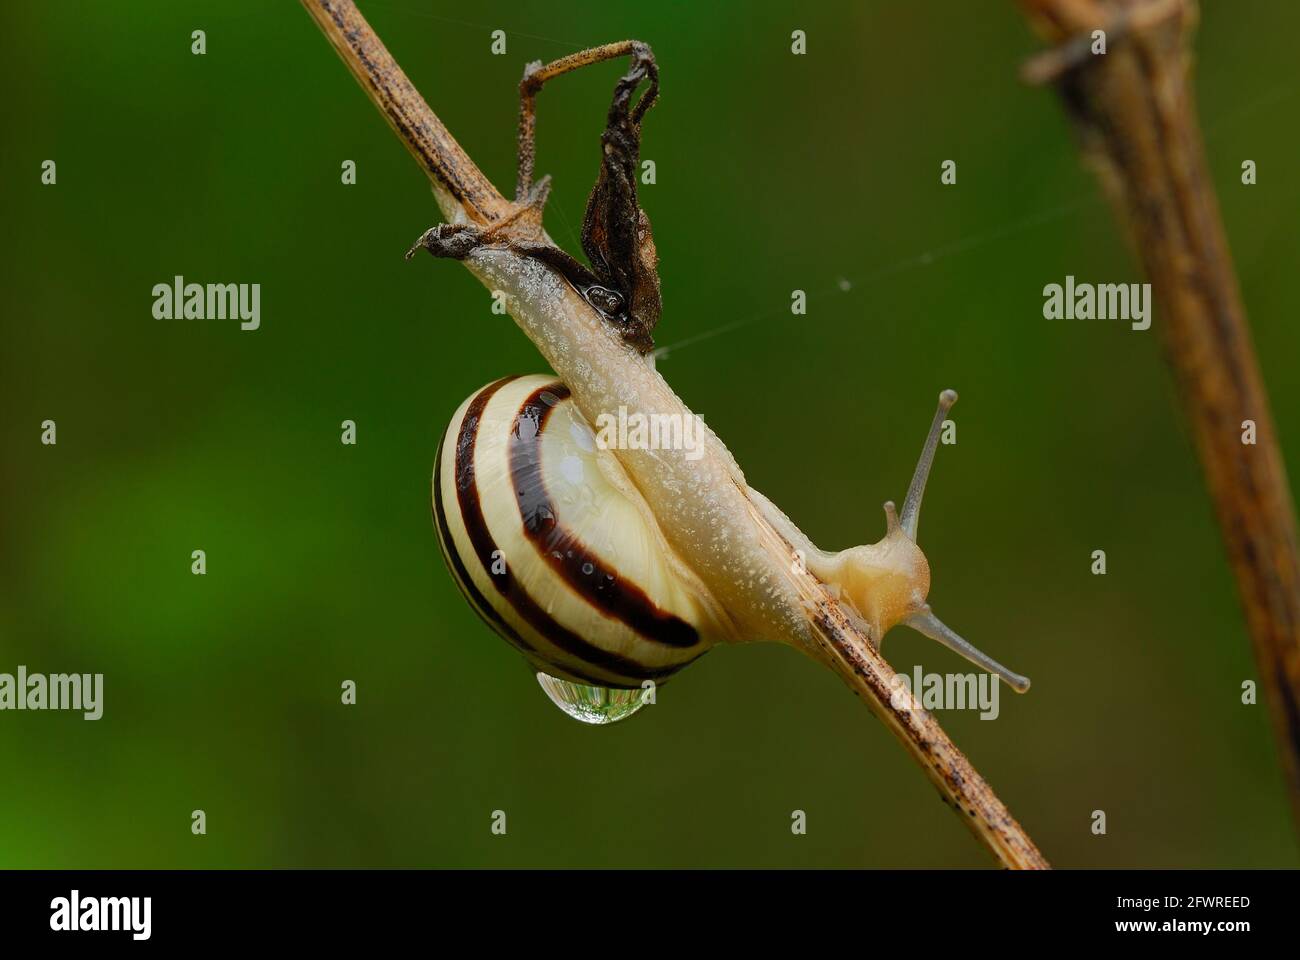 Weiße Schnecke mit einem großen Wassertropfen auf der Muschel, aus nächster Nähe. Kriechen auf trockenem Gras nach Regen. Verschwommener grüner Hintergrund. Gattung Cepaea hortensis. Stockfoto